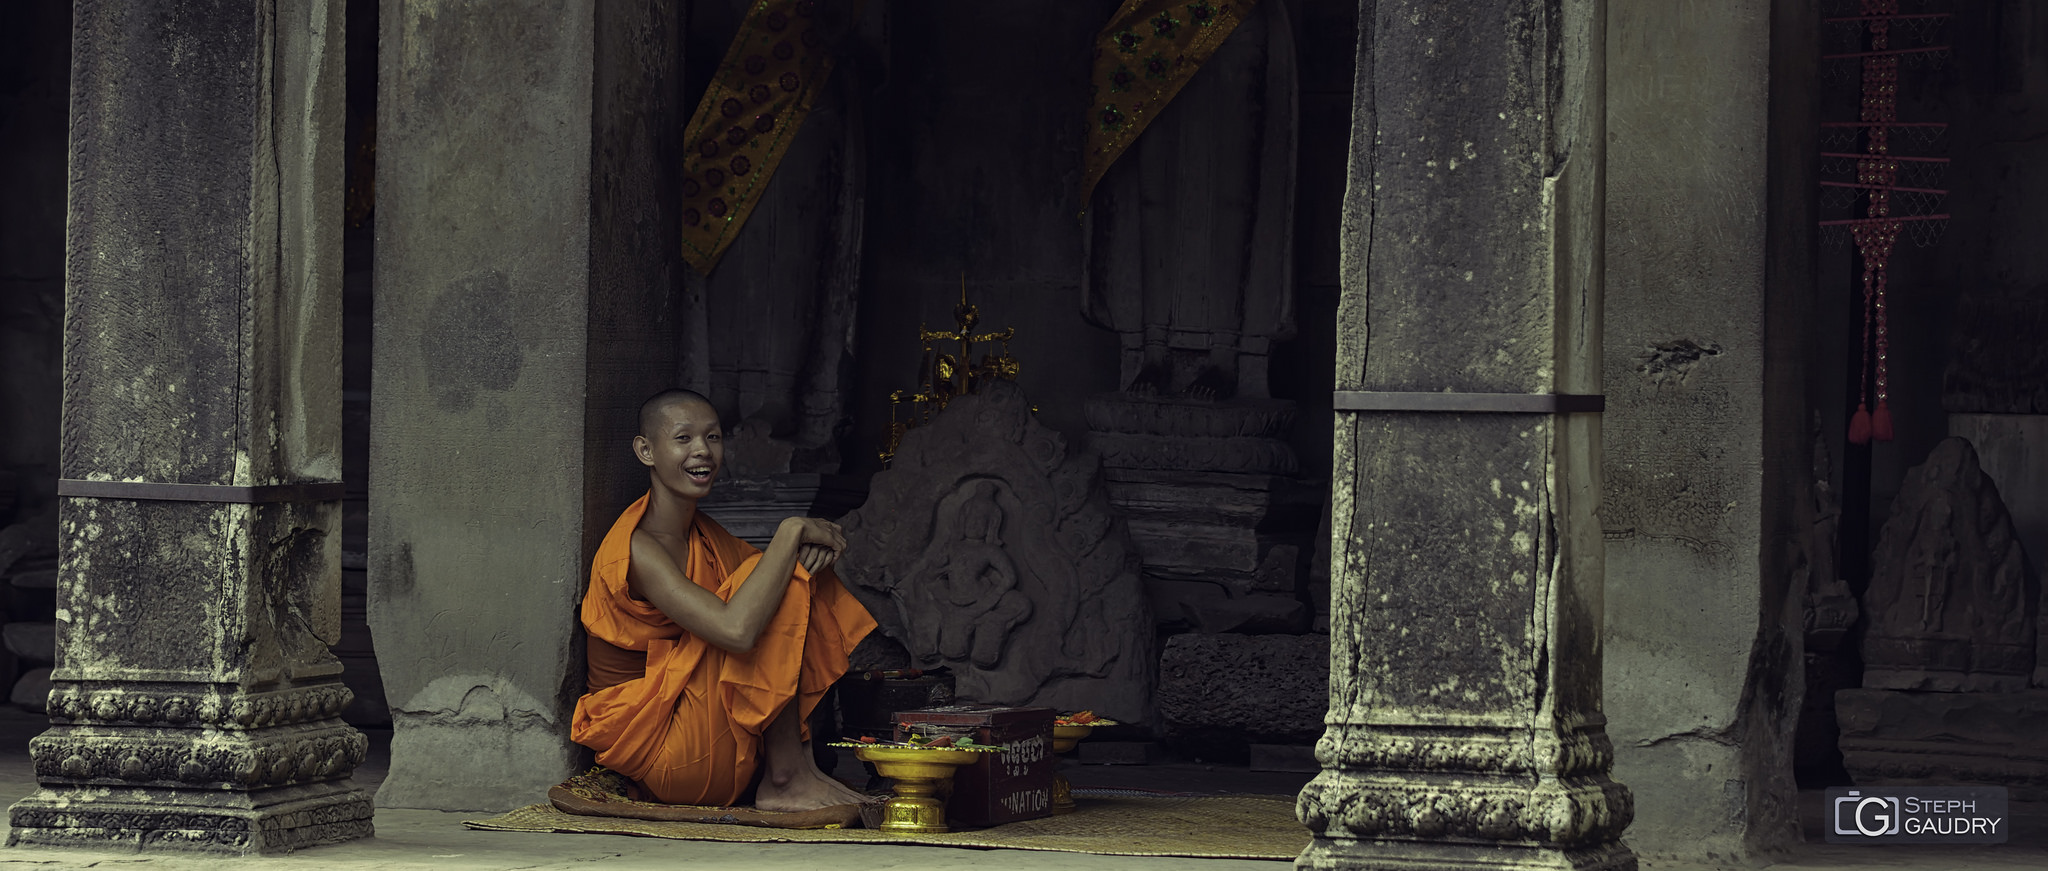 Le sourire du jeune bouddhiste [Klicken Sie hier, um die Diashow zu starten]